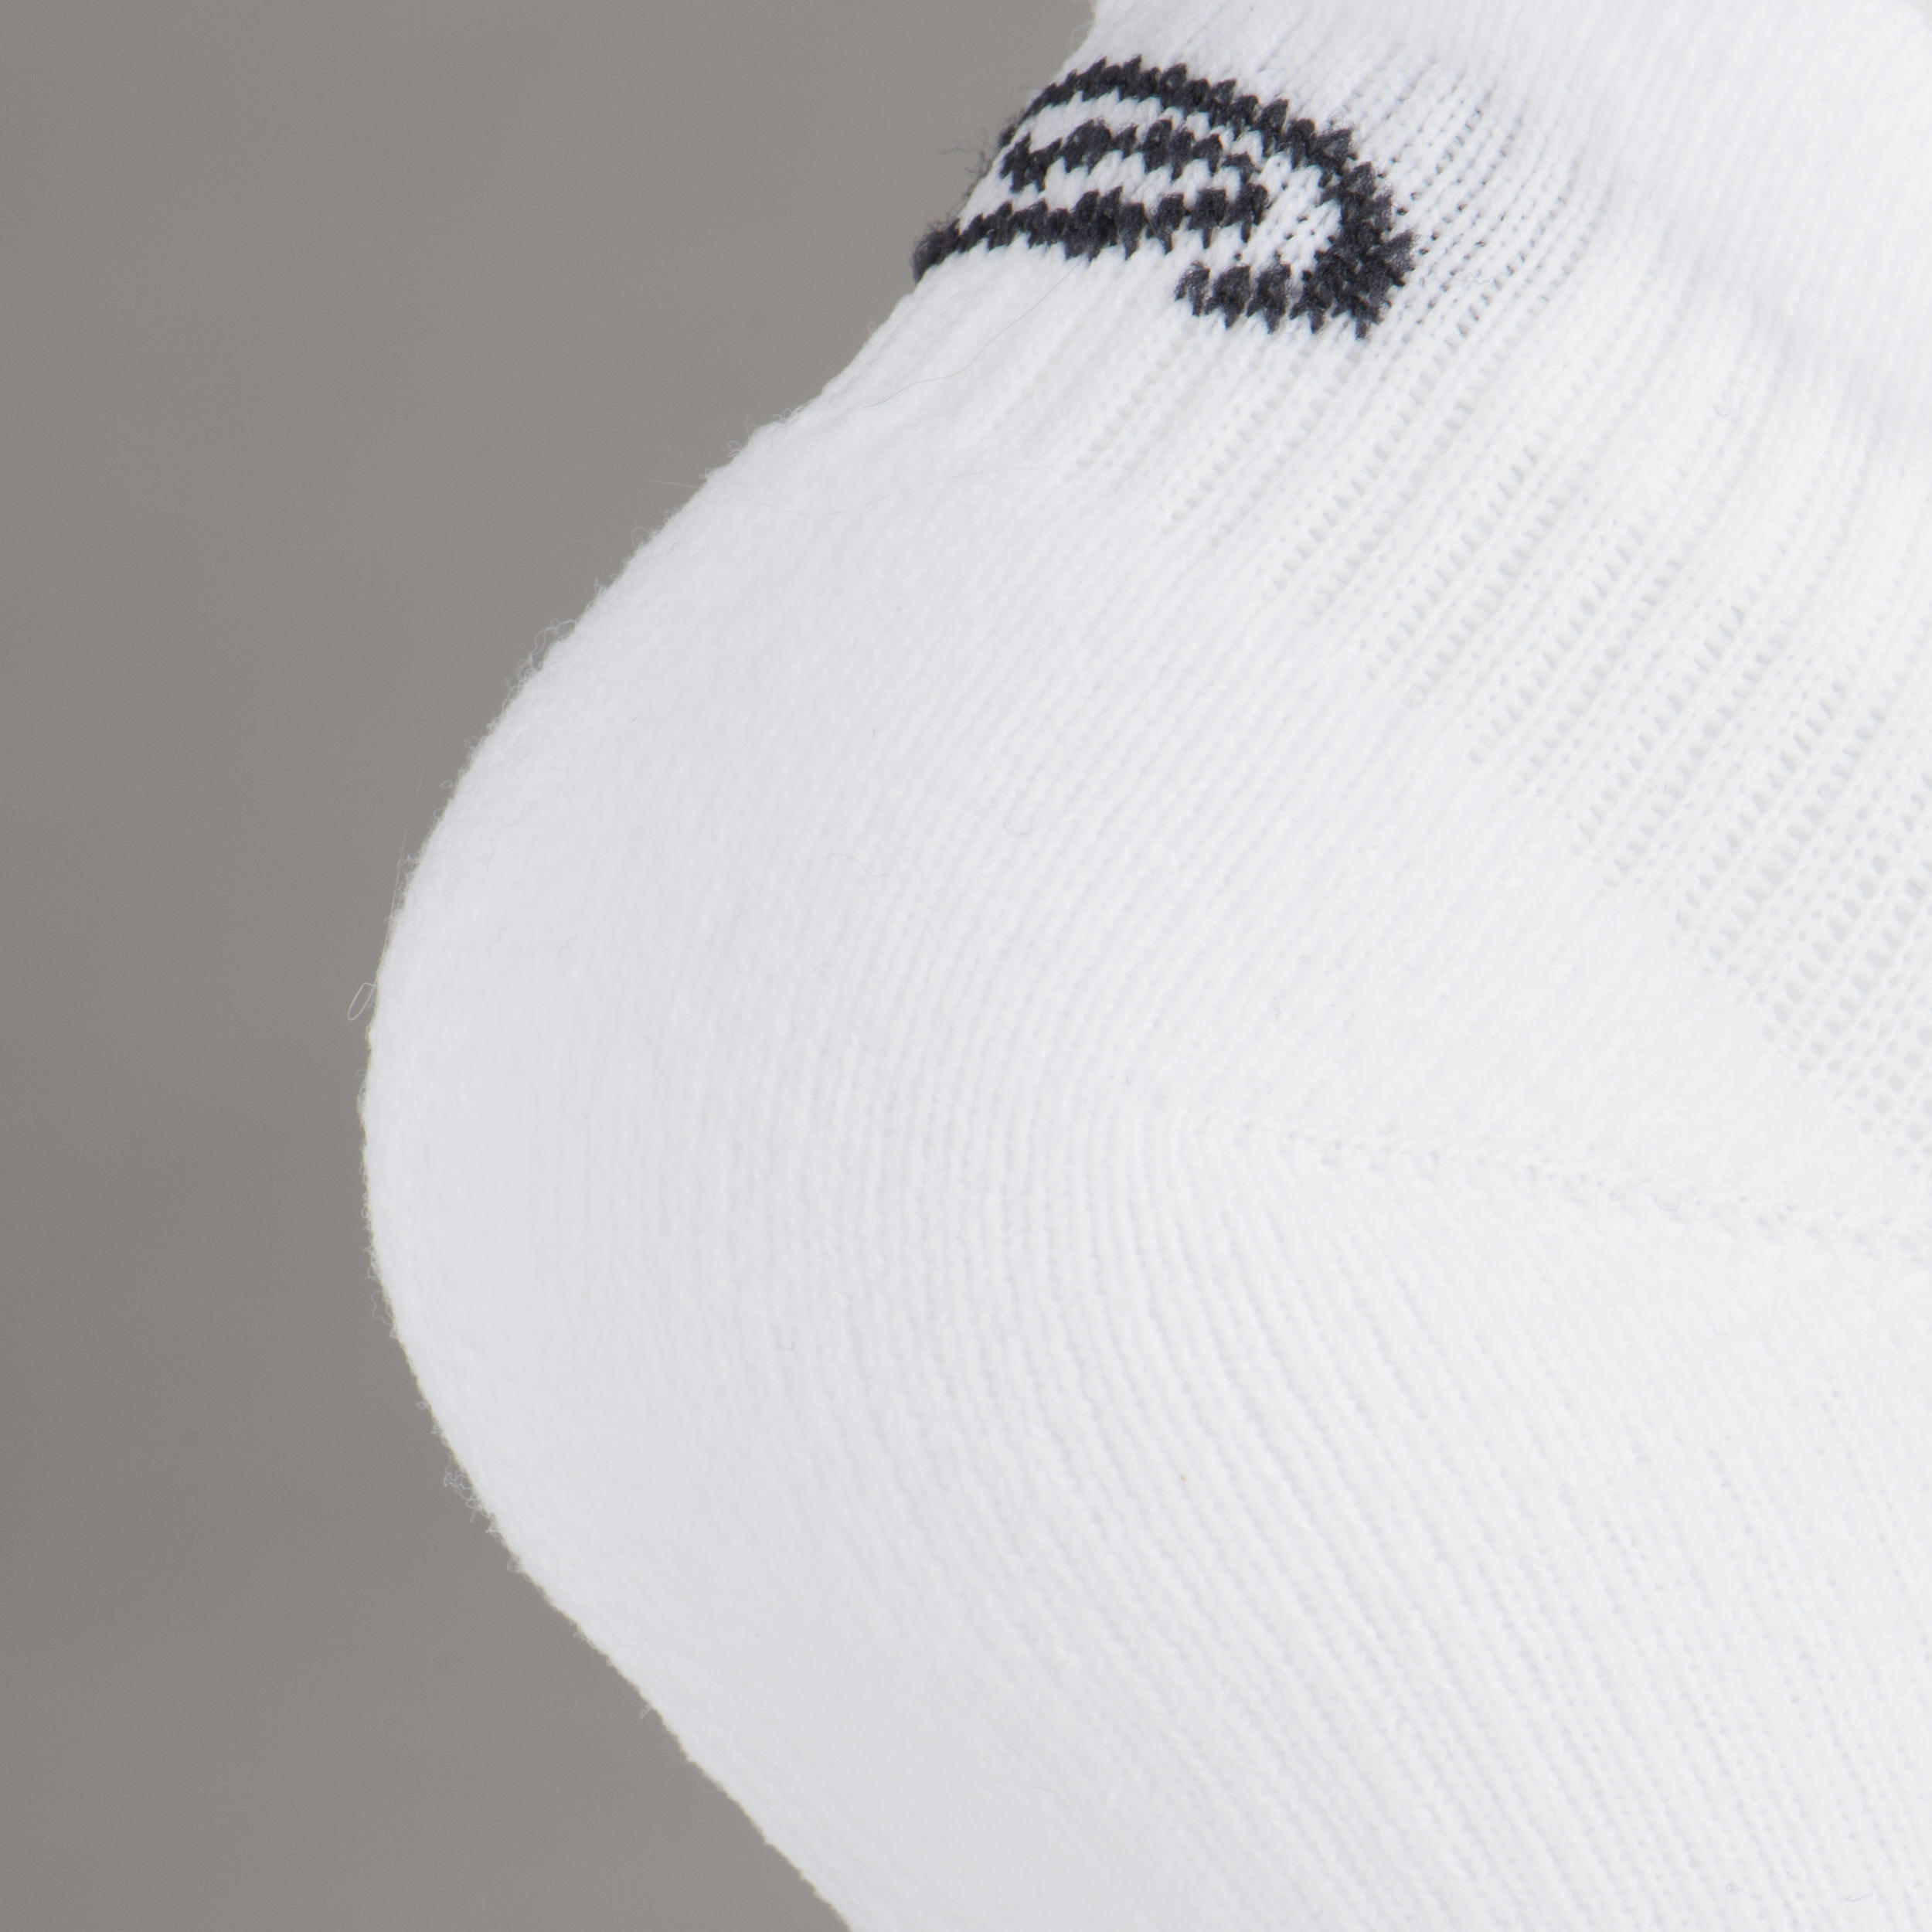 KIPRUN 500 INV kids comfort running socks 2-pack - black and white 3/9